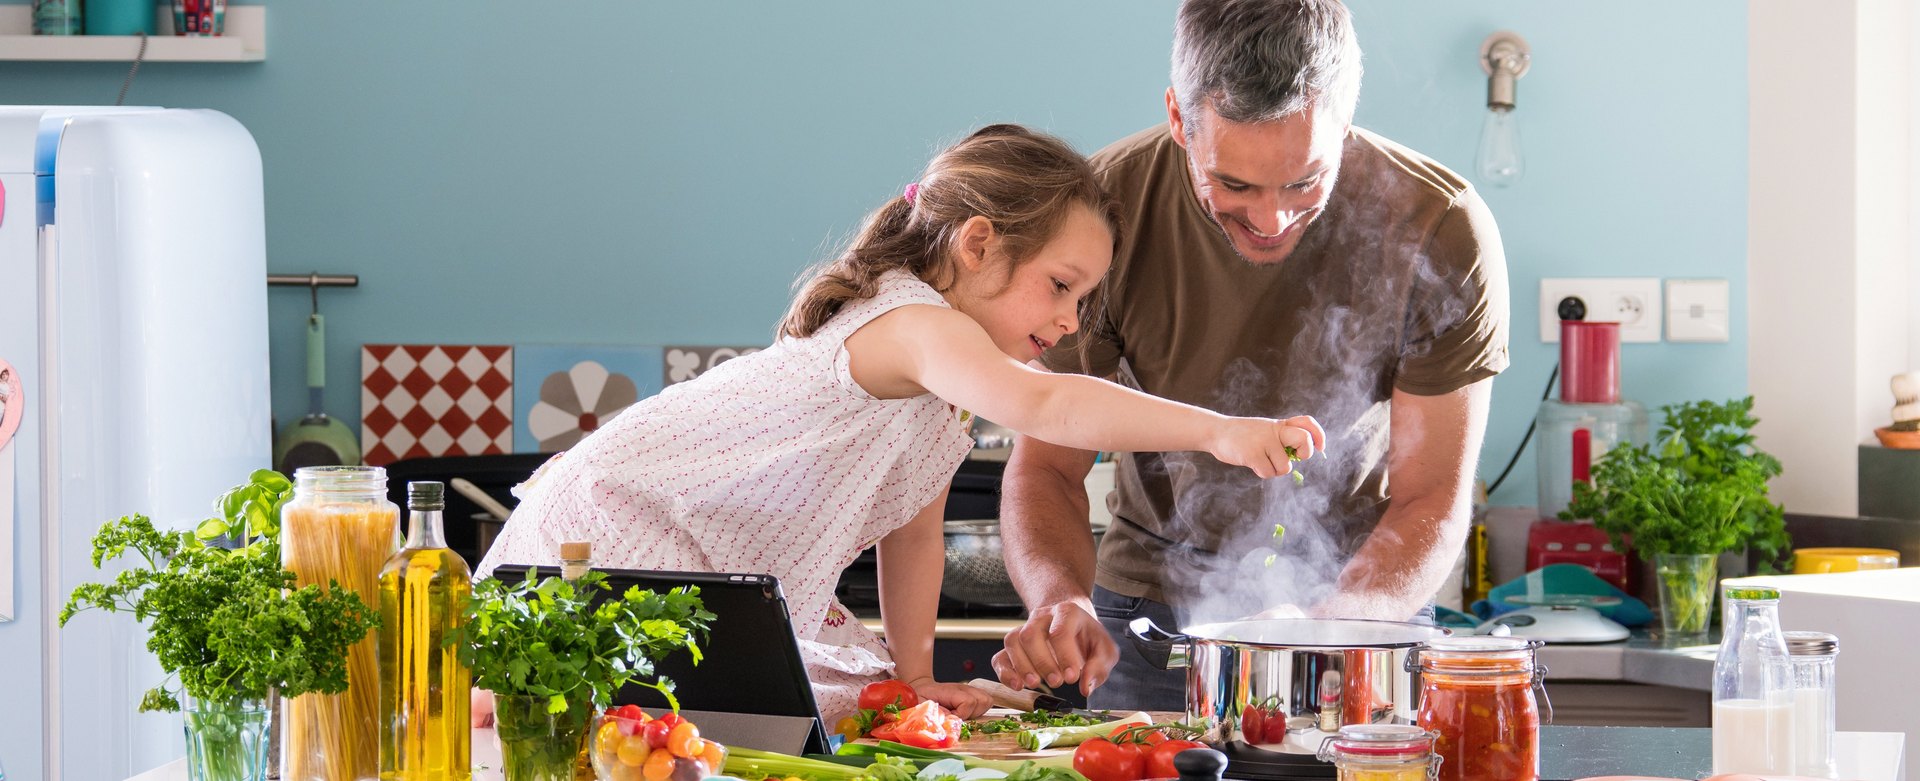 Vater und Tochter kochen gemeinsam ein Gericht mit Nudeln, Olivenöl und Tomatensugo.